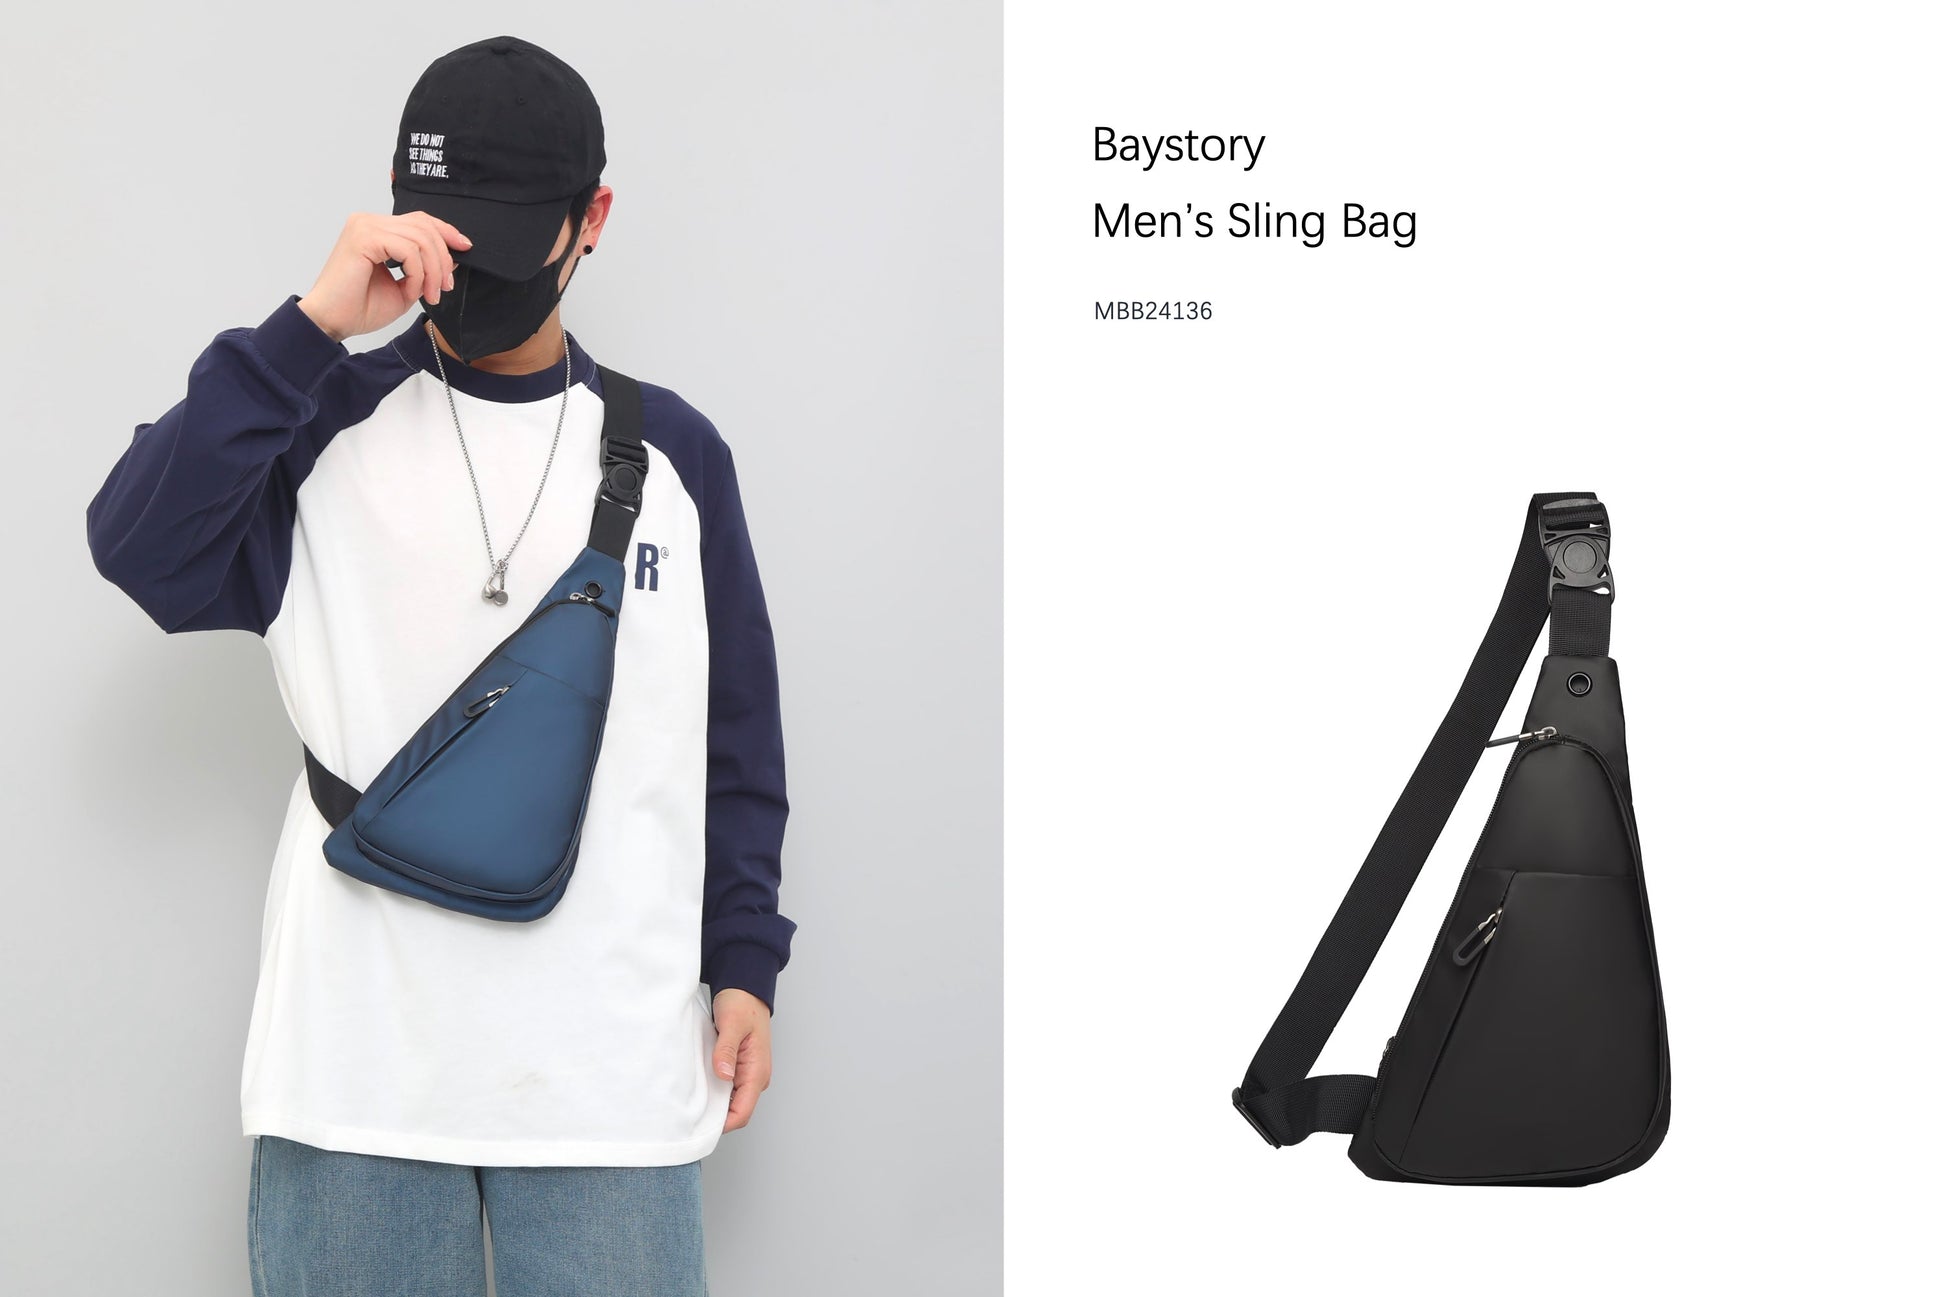 Baystory Men’s Sling Bag MBB24136 - Baystory